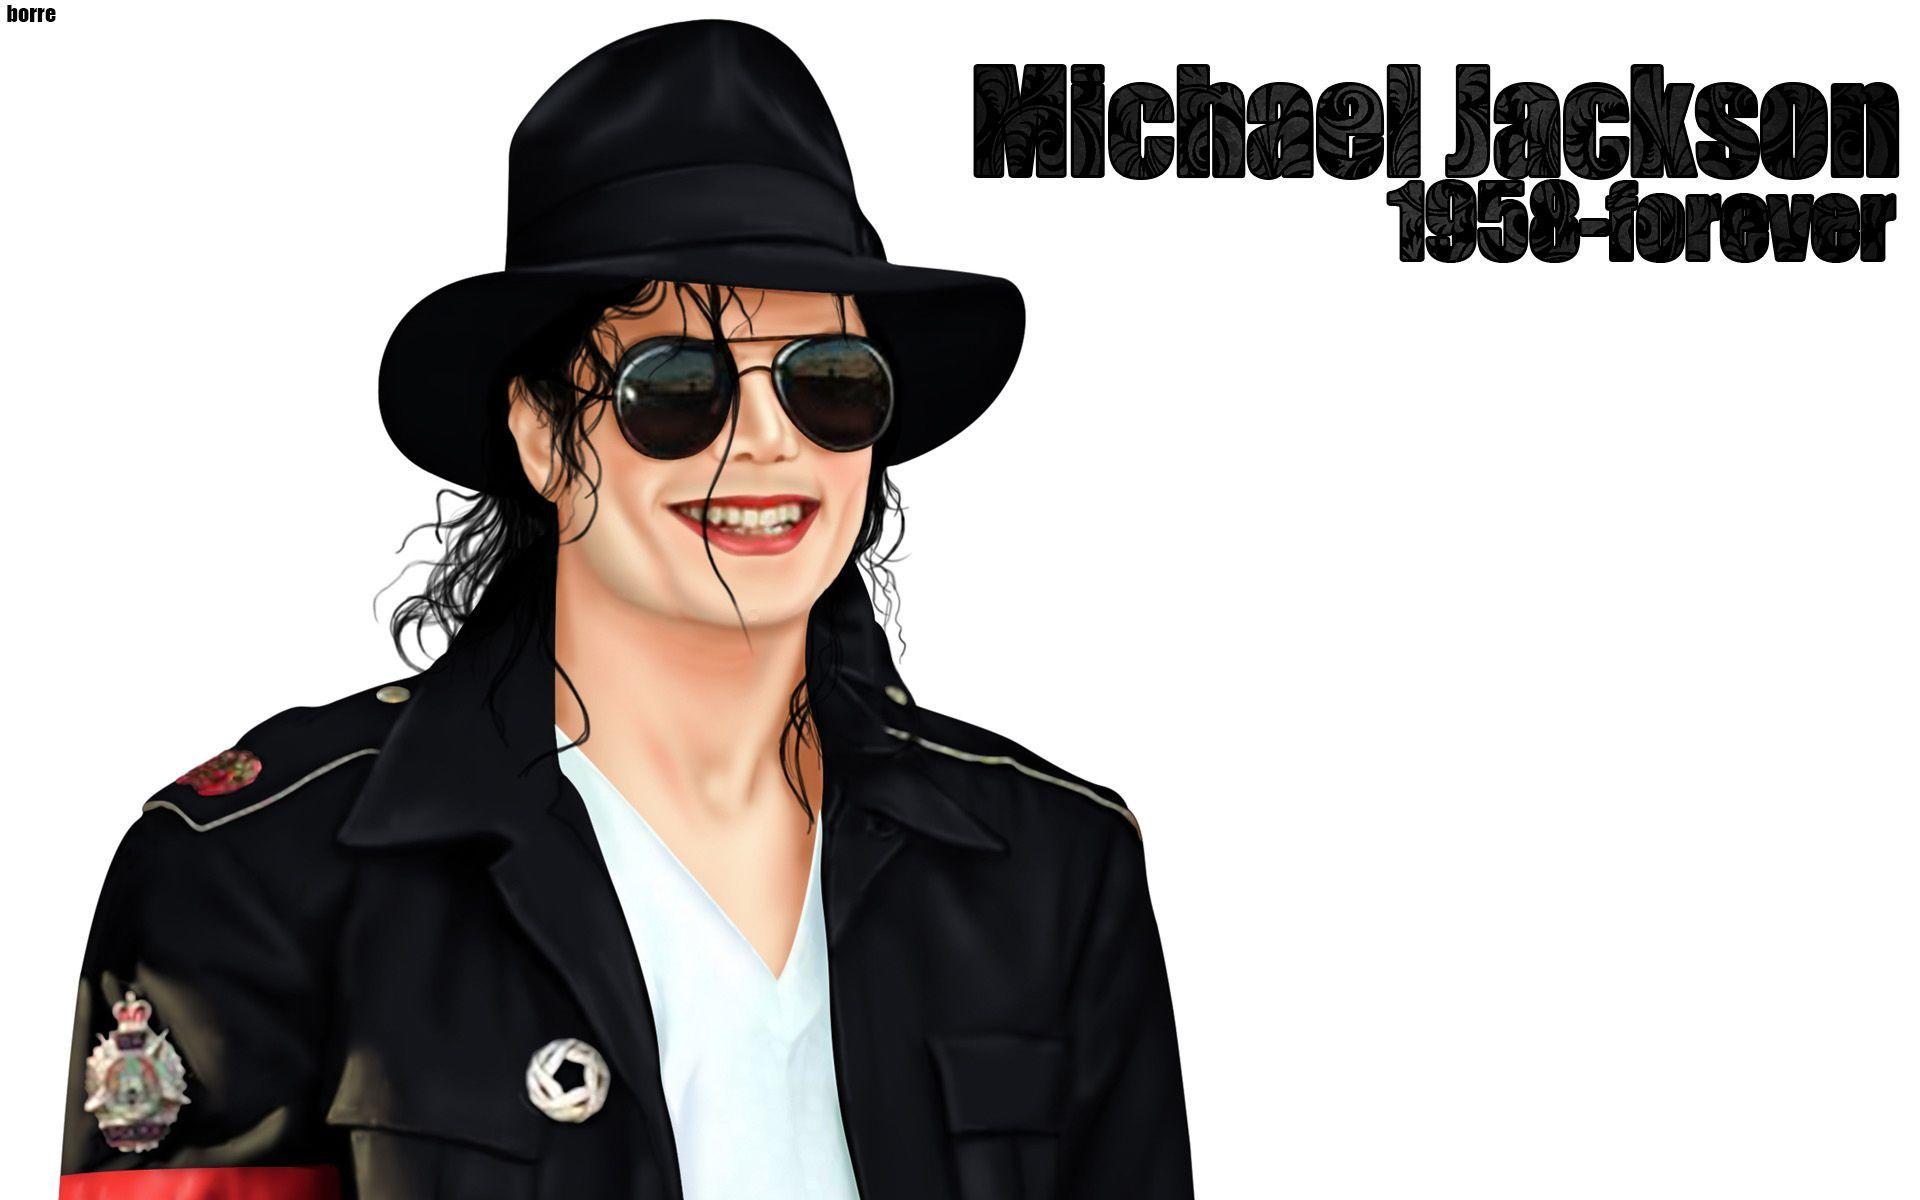 Michael Jackson HD Image 10. Michael Jackson HD Image